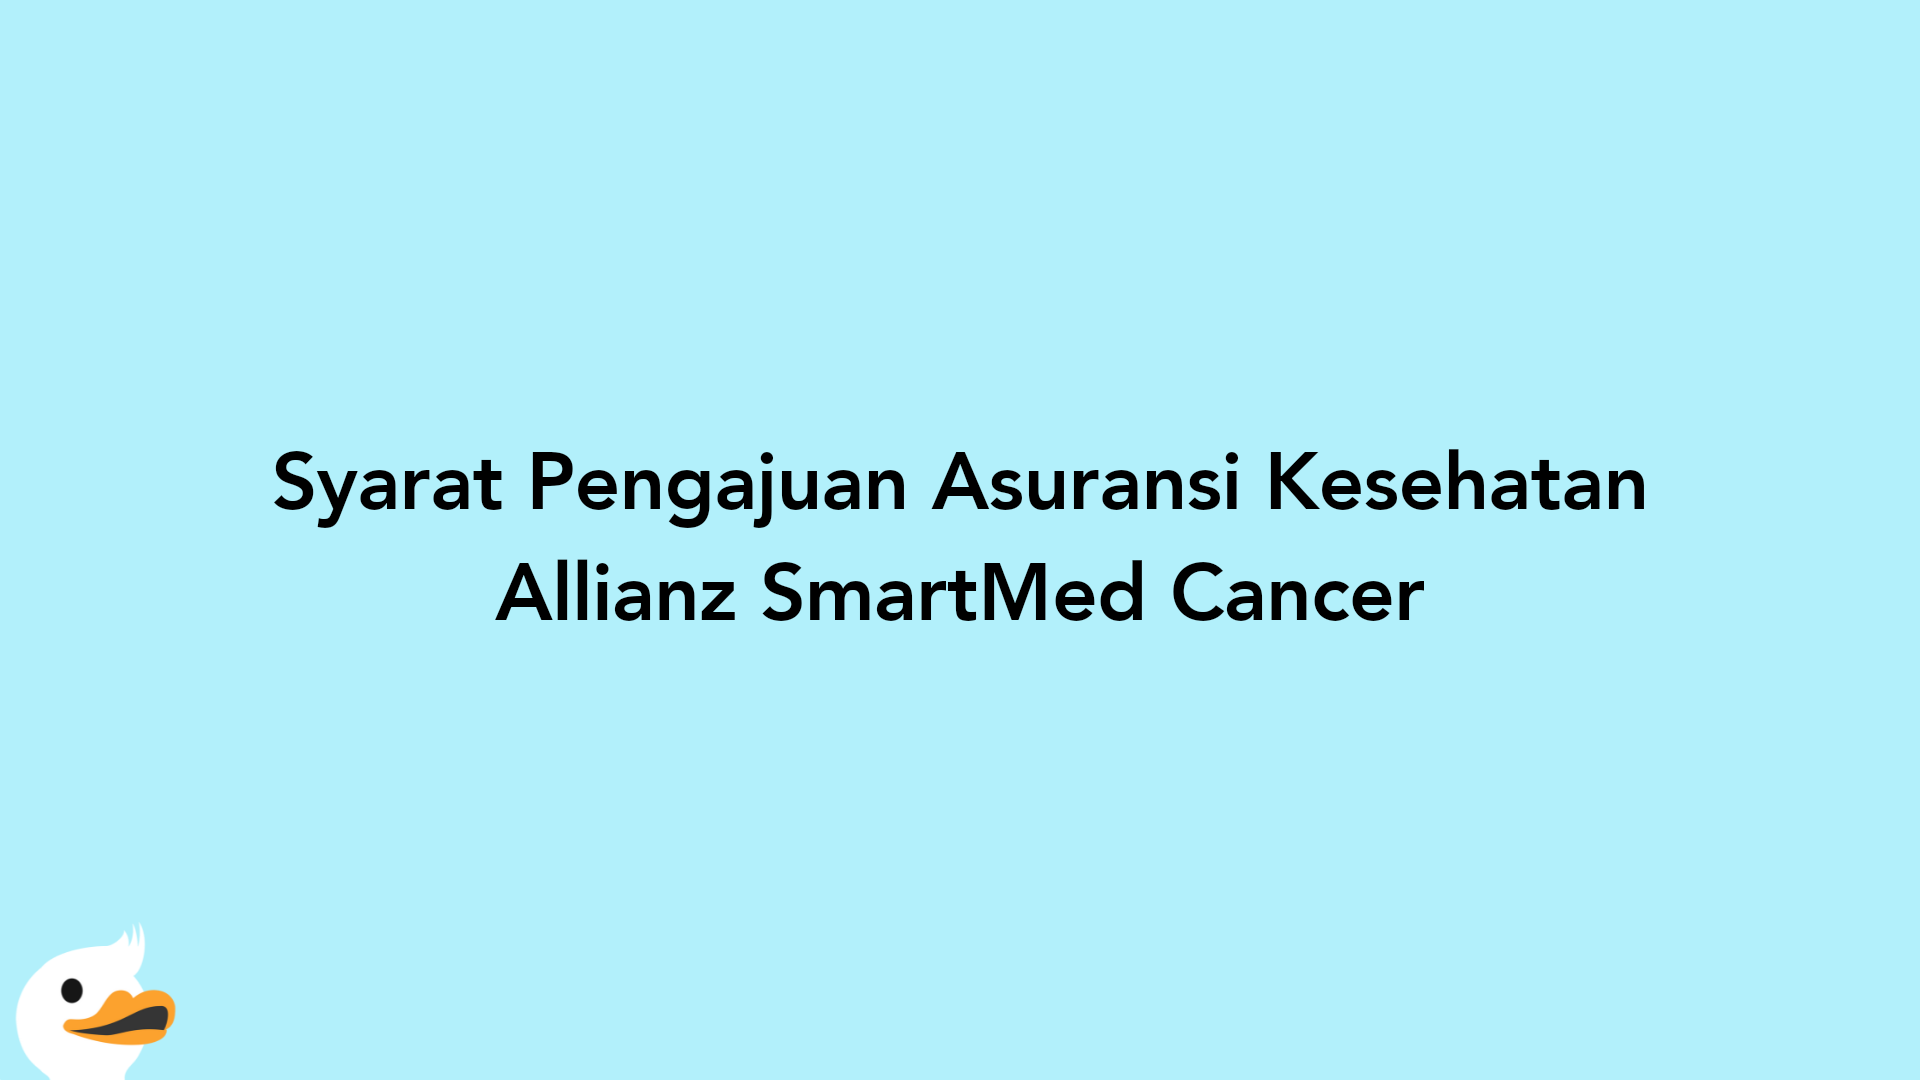 Syarat Pengajuan Asuransi Kesehatan Allianz SmartMed Cancer